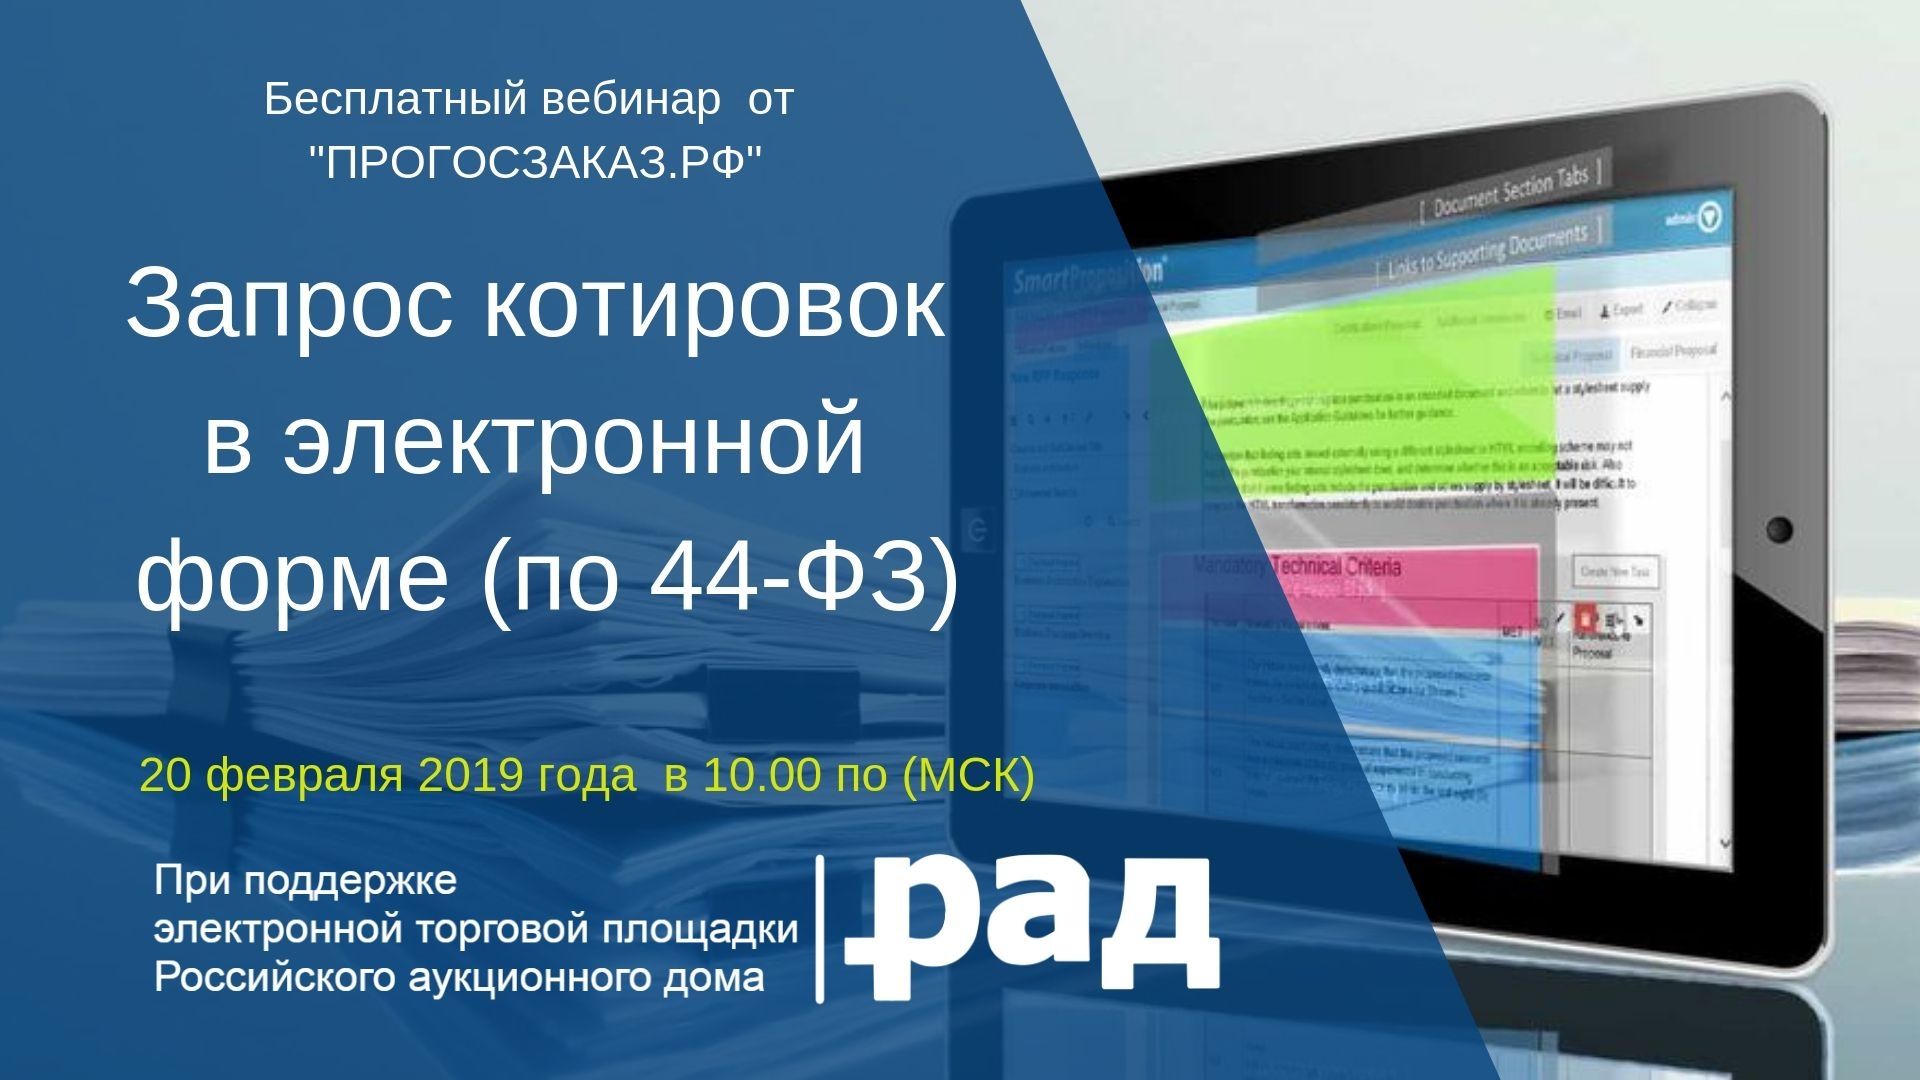 20 февраля 2019 года в 10:00 по МСК состоится бесплатный онлайн вебинар на тему: «Запрос котировок в электронной форме»